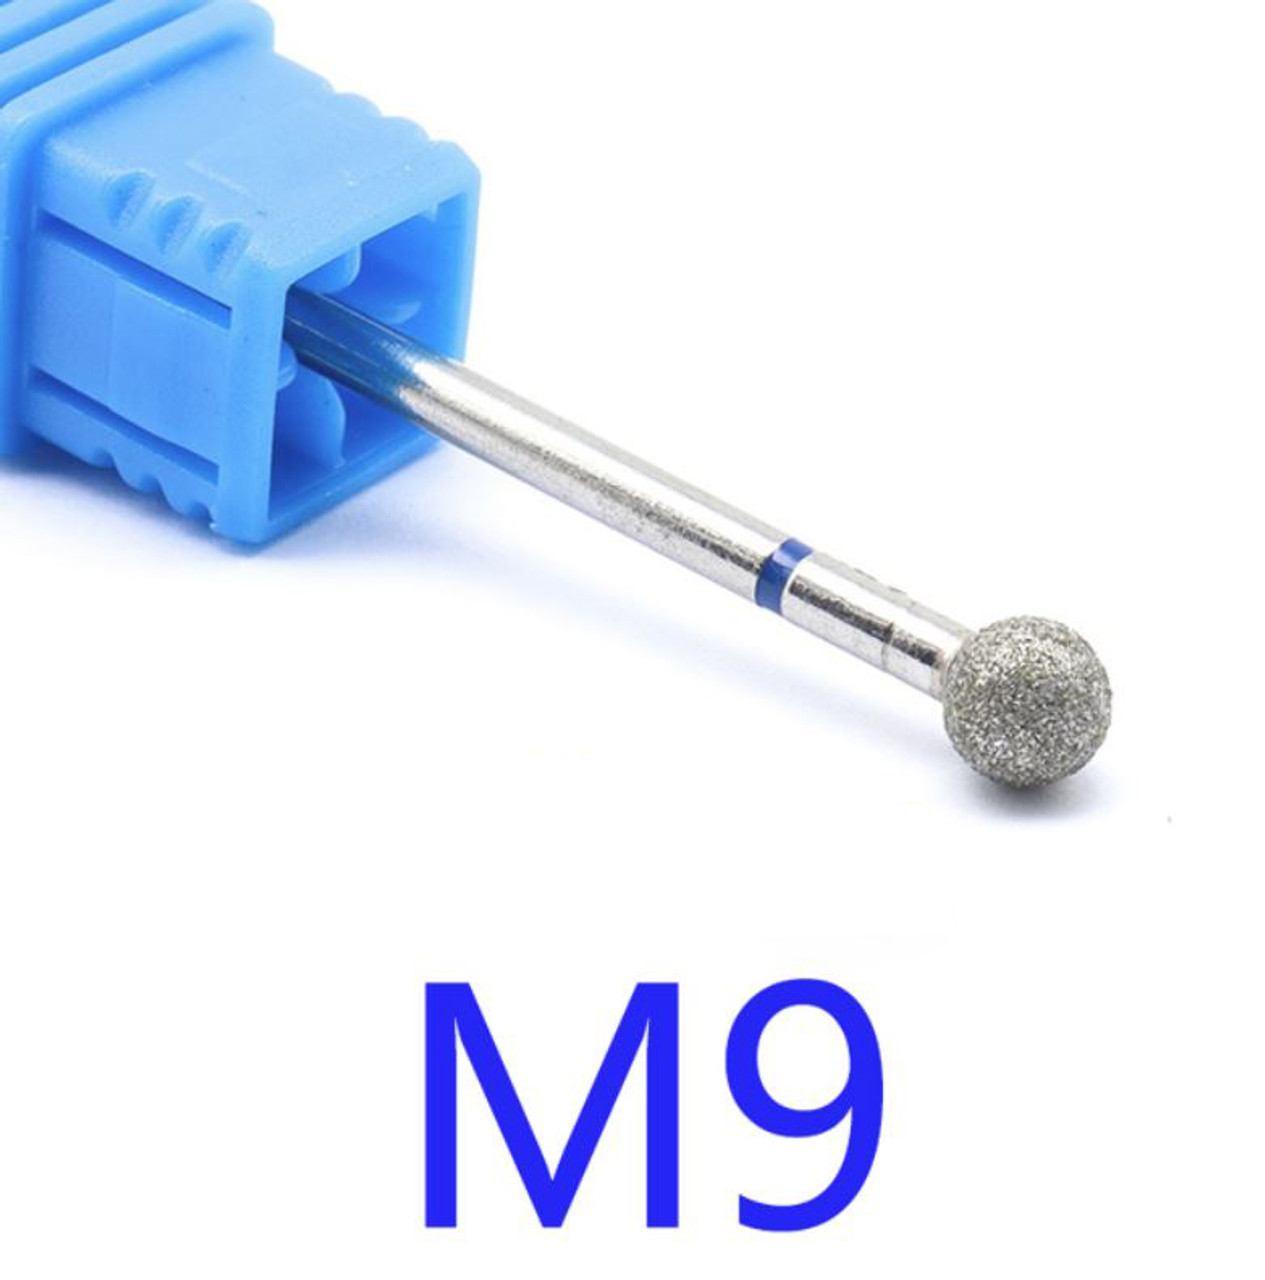 NDi beauty Diamond Drill Bit - 3/32 shank (MEDIUM) - M9